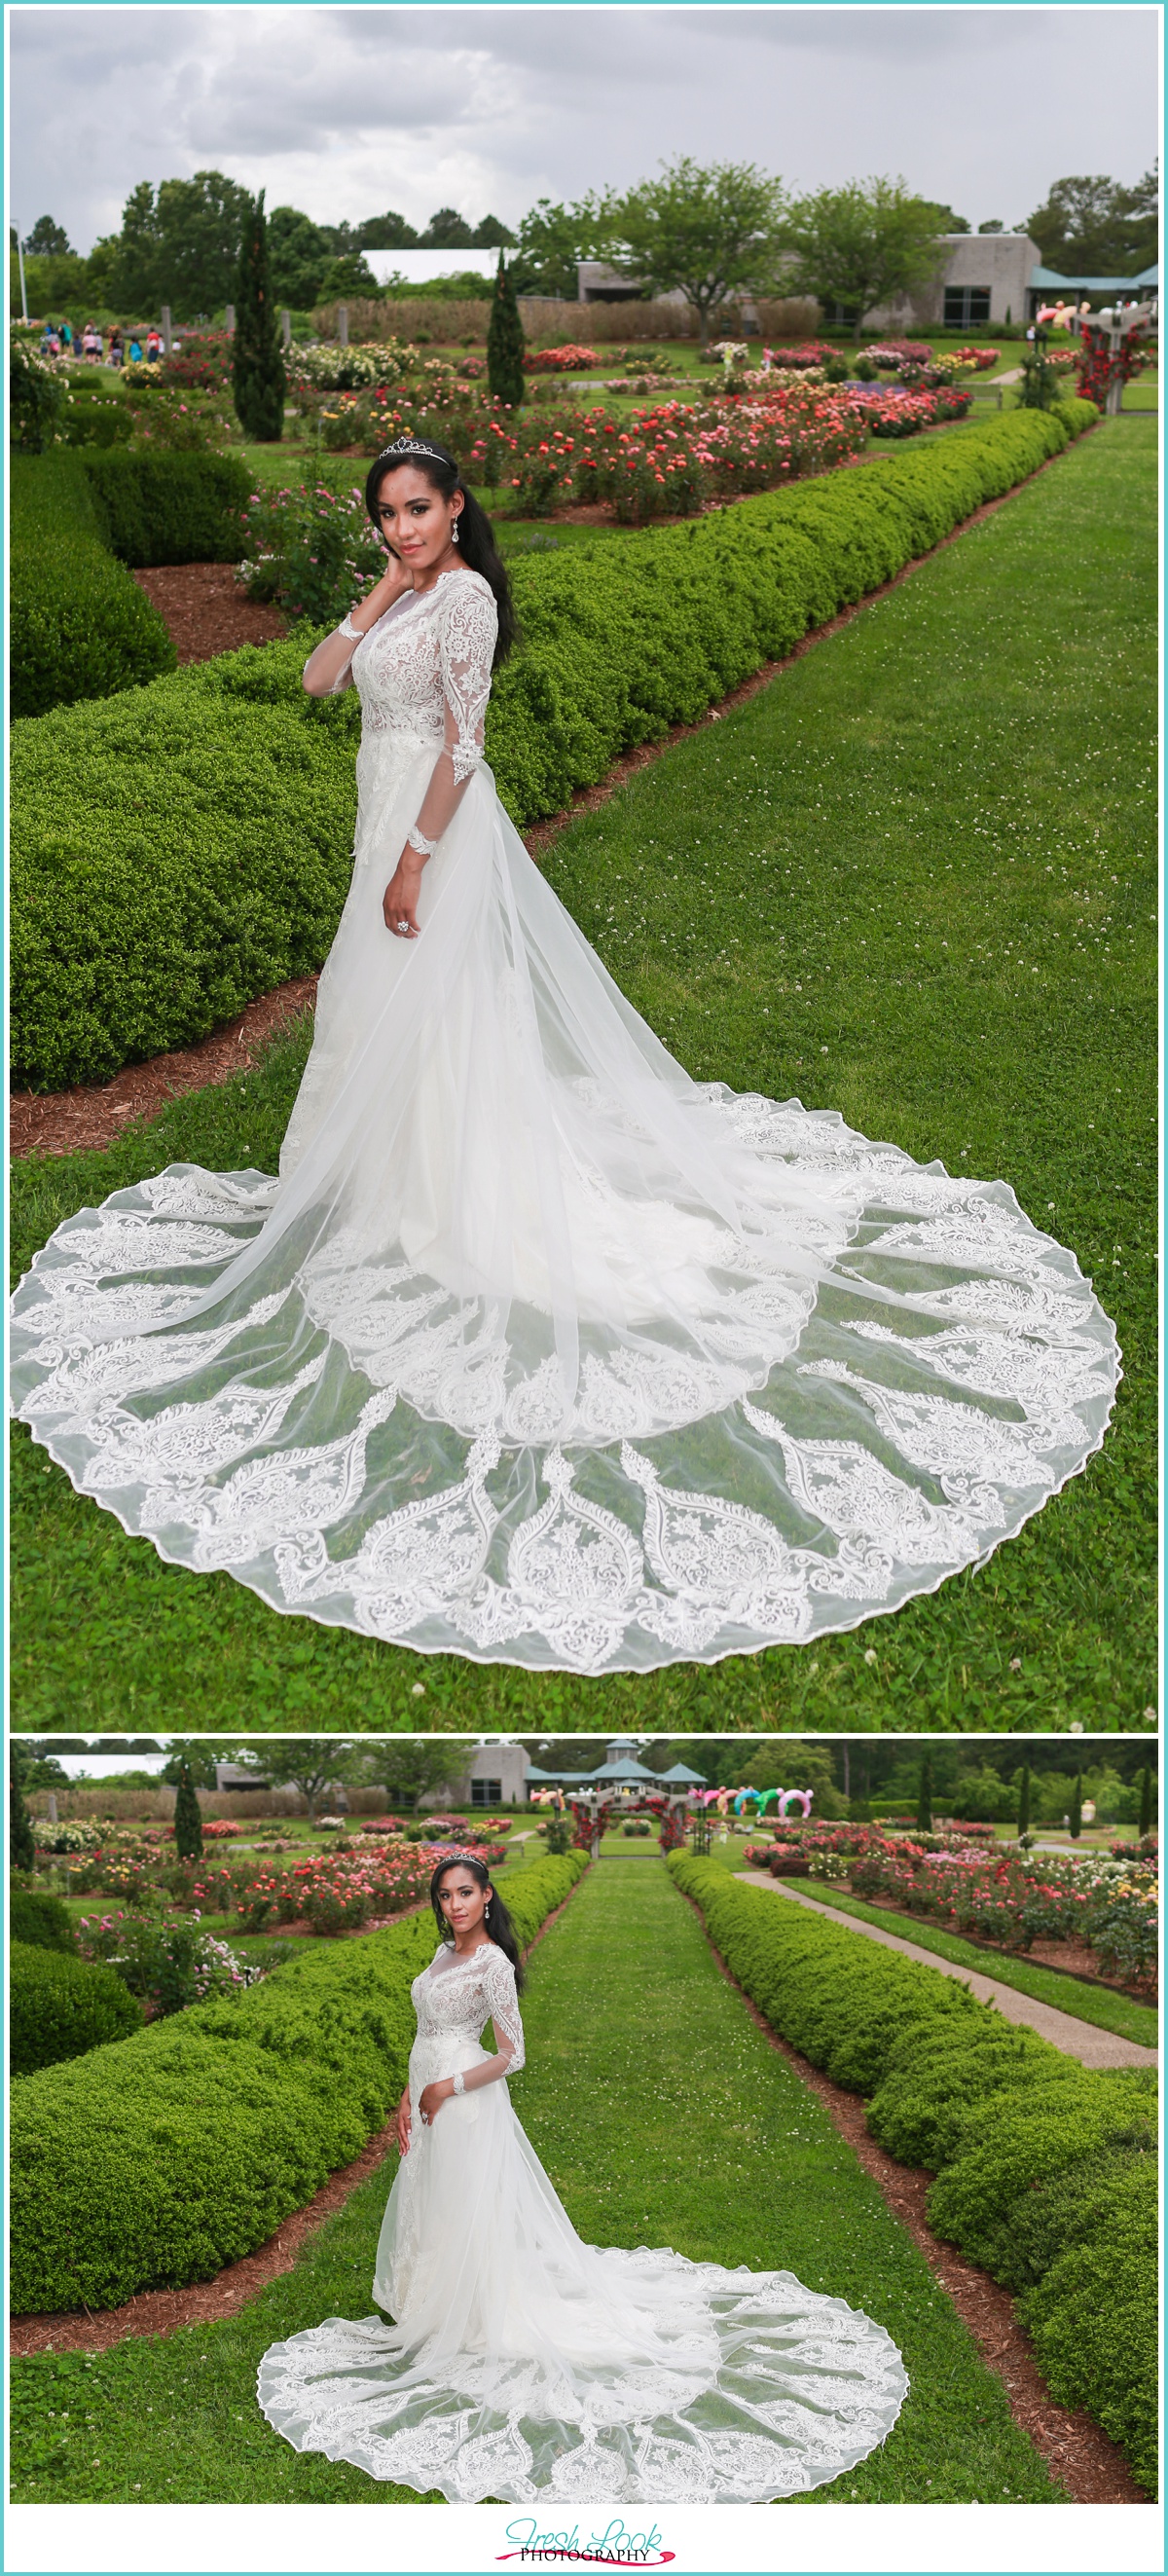 Virginia Bride on wedding day